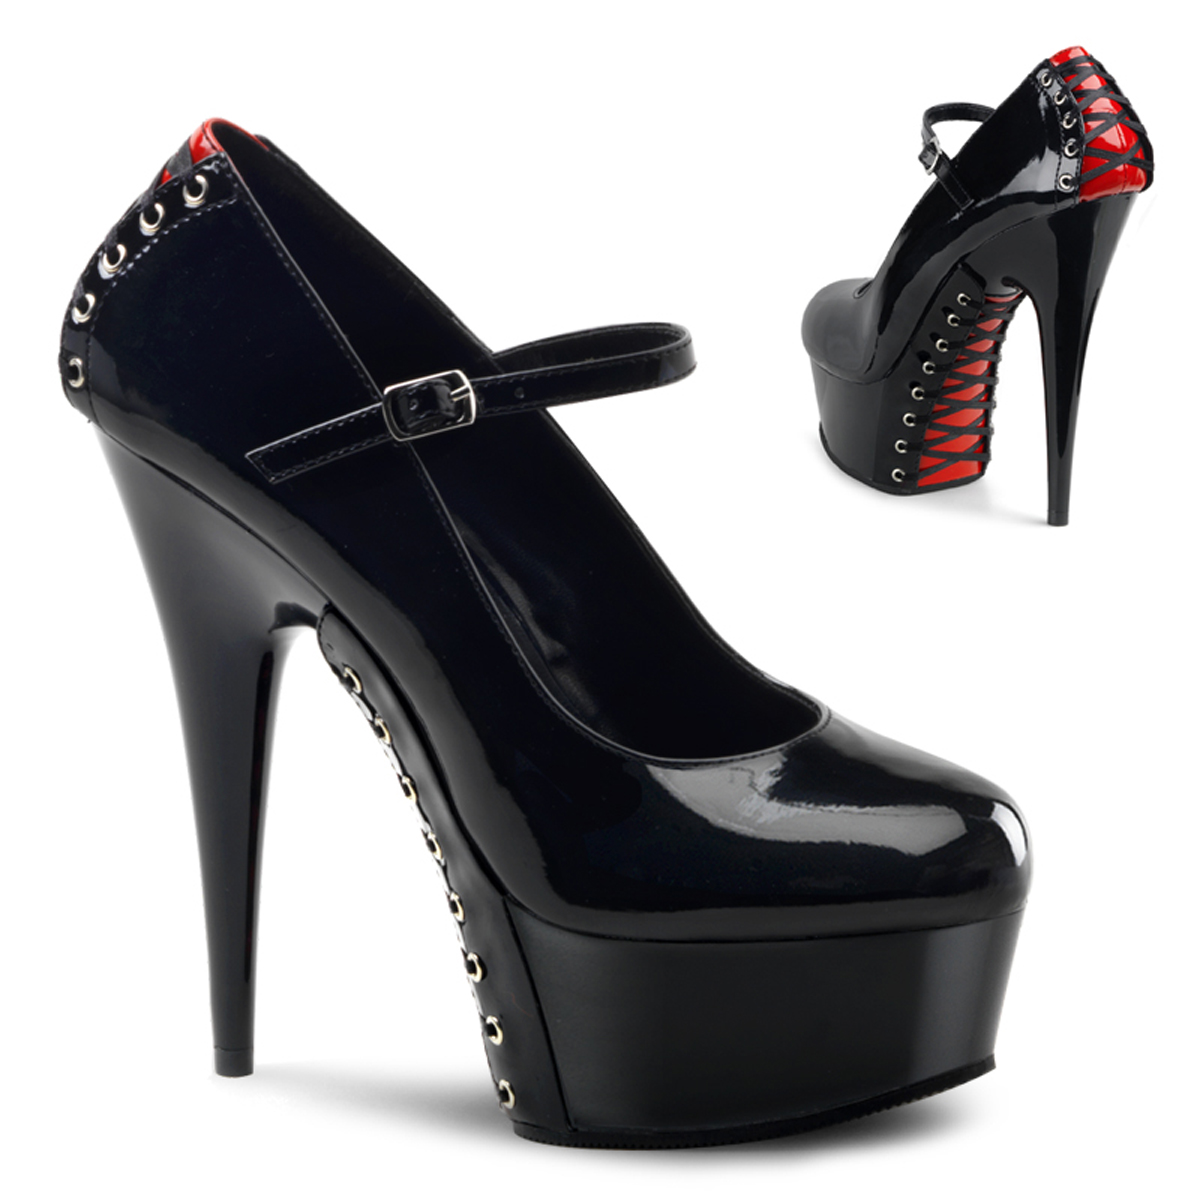 PLEASER 6" Heel Black Platform Black Red Corset Lace Up Ankle High Sandals Shoes